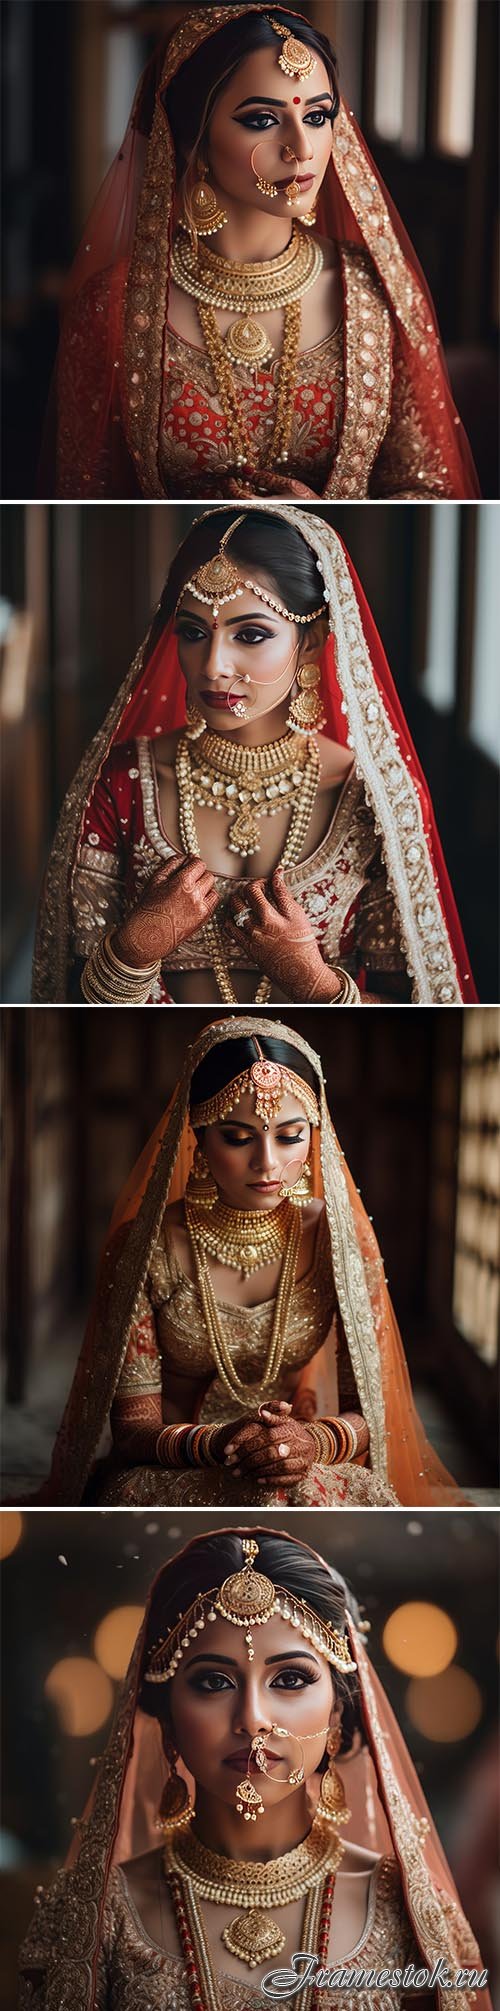 Photo pretty indian bride image